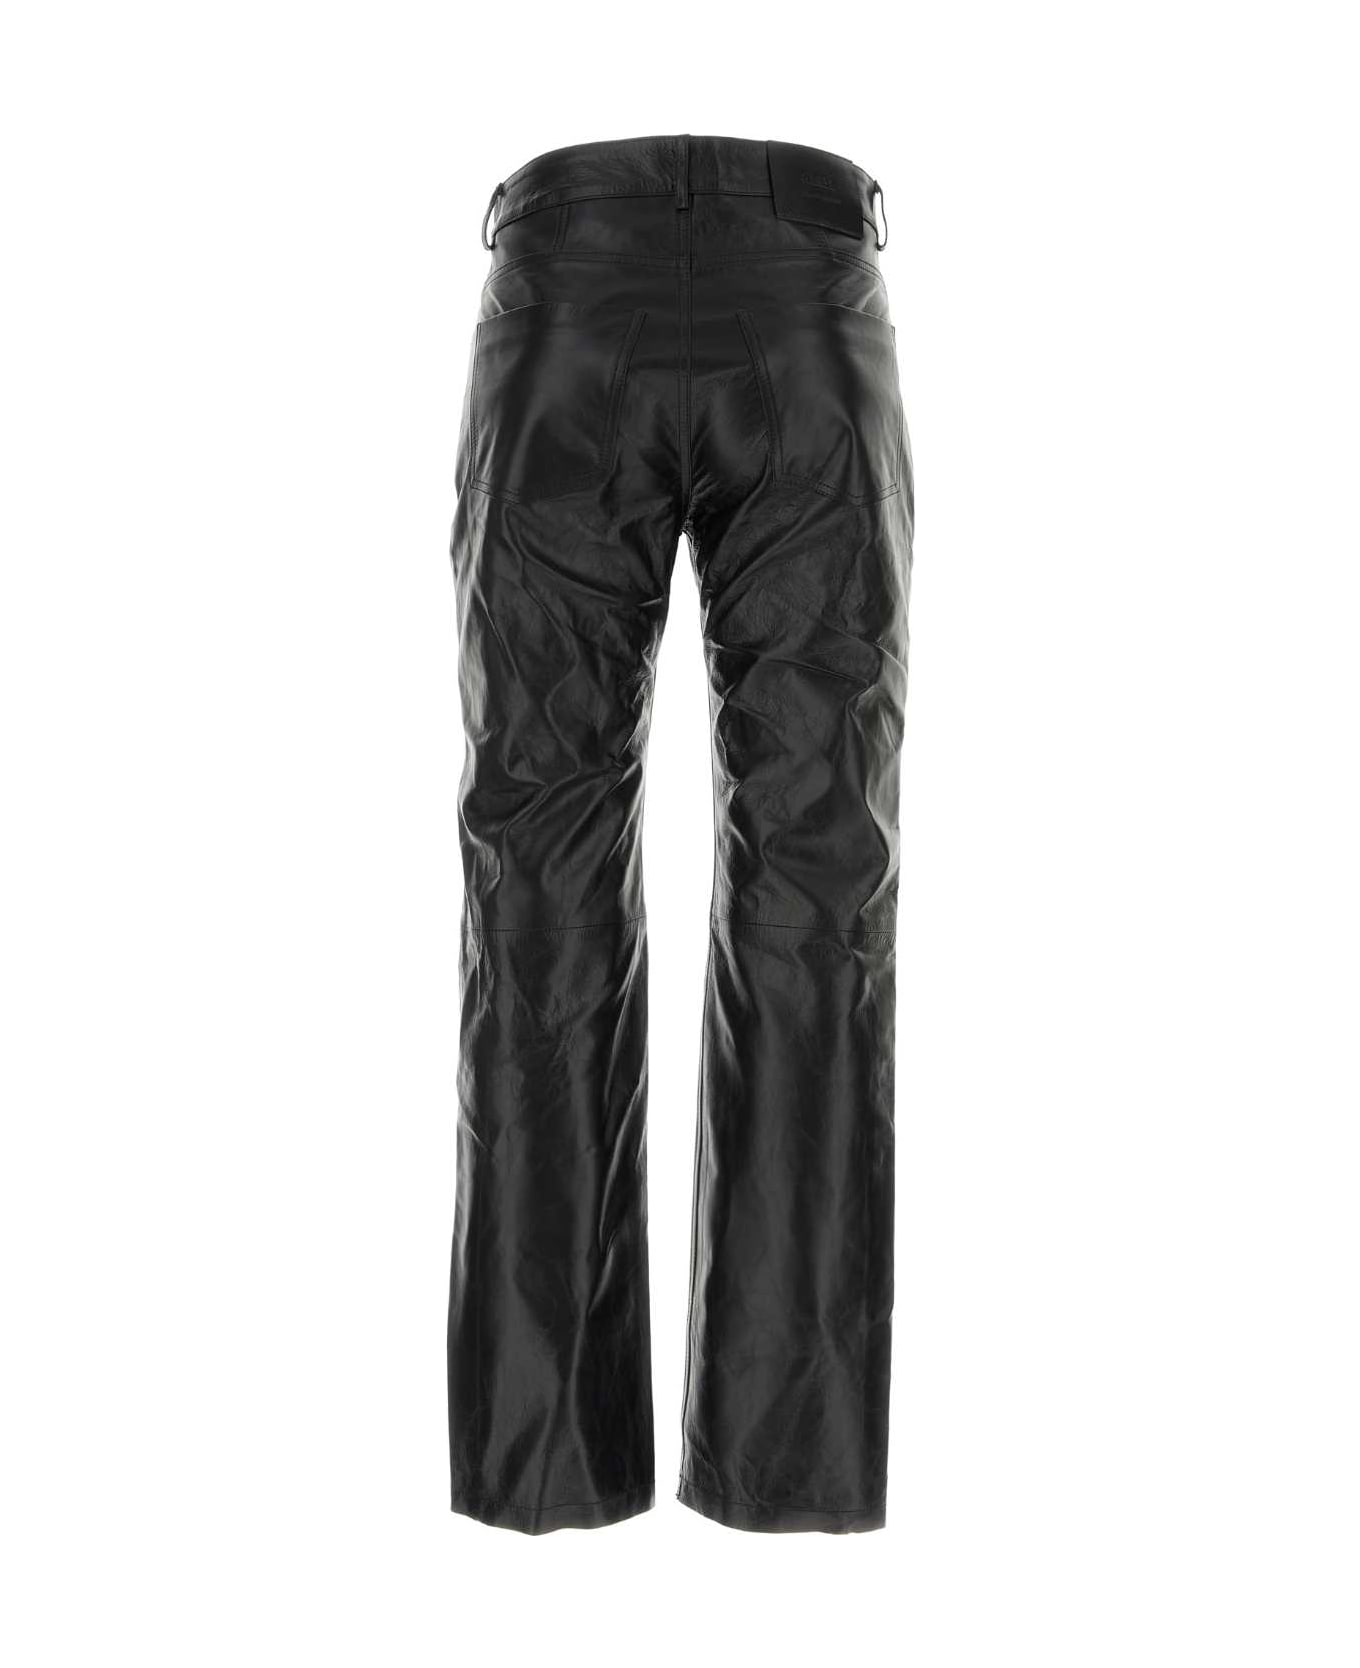 Ami Alexandre Mattiussi Black Leather Pant - BLACK name:467